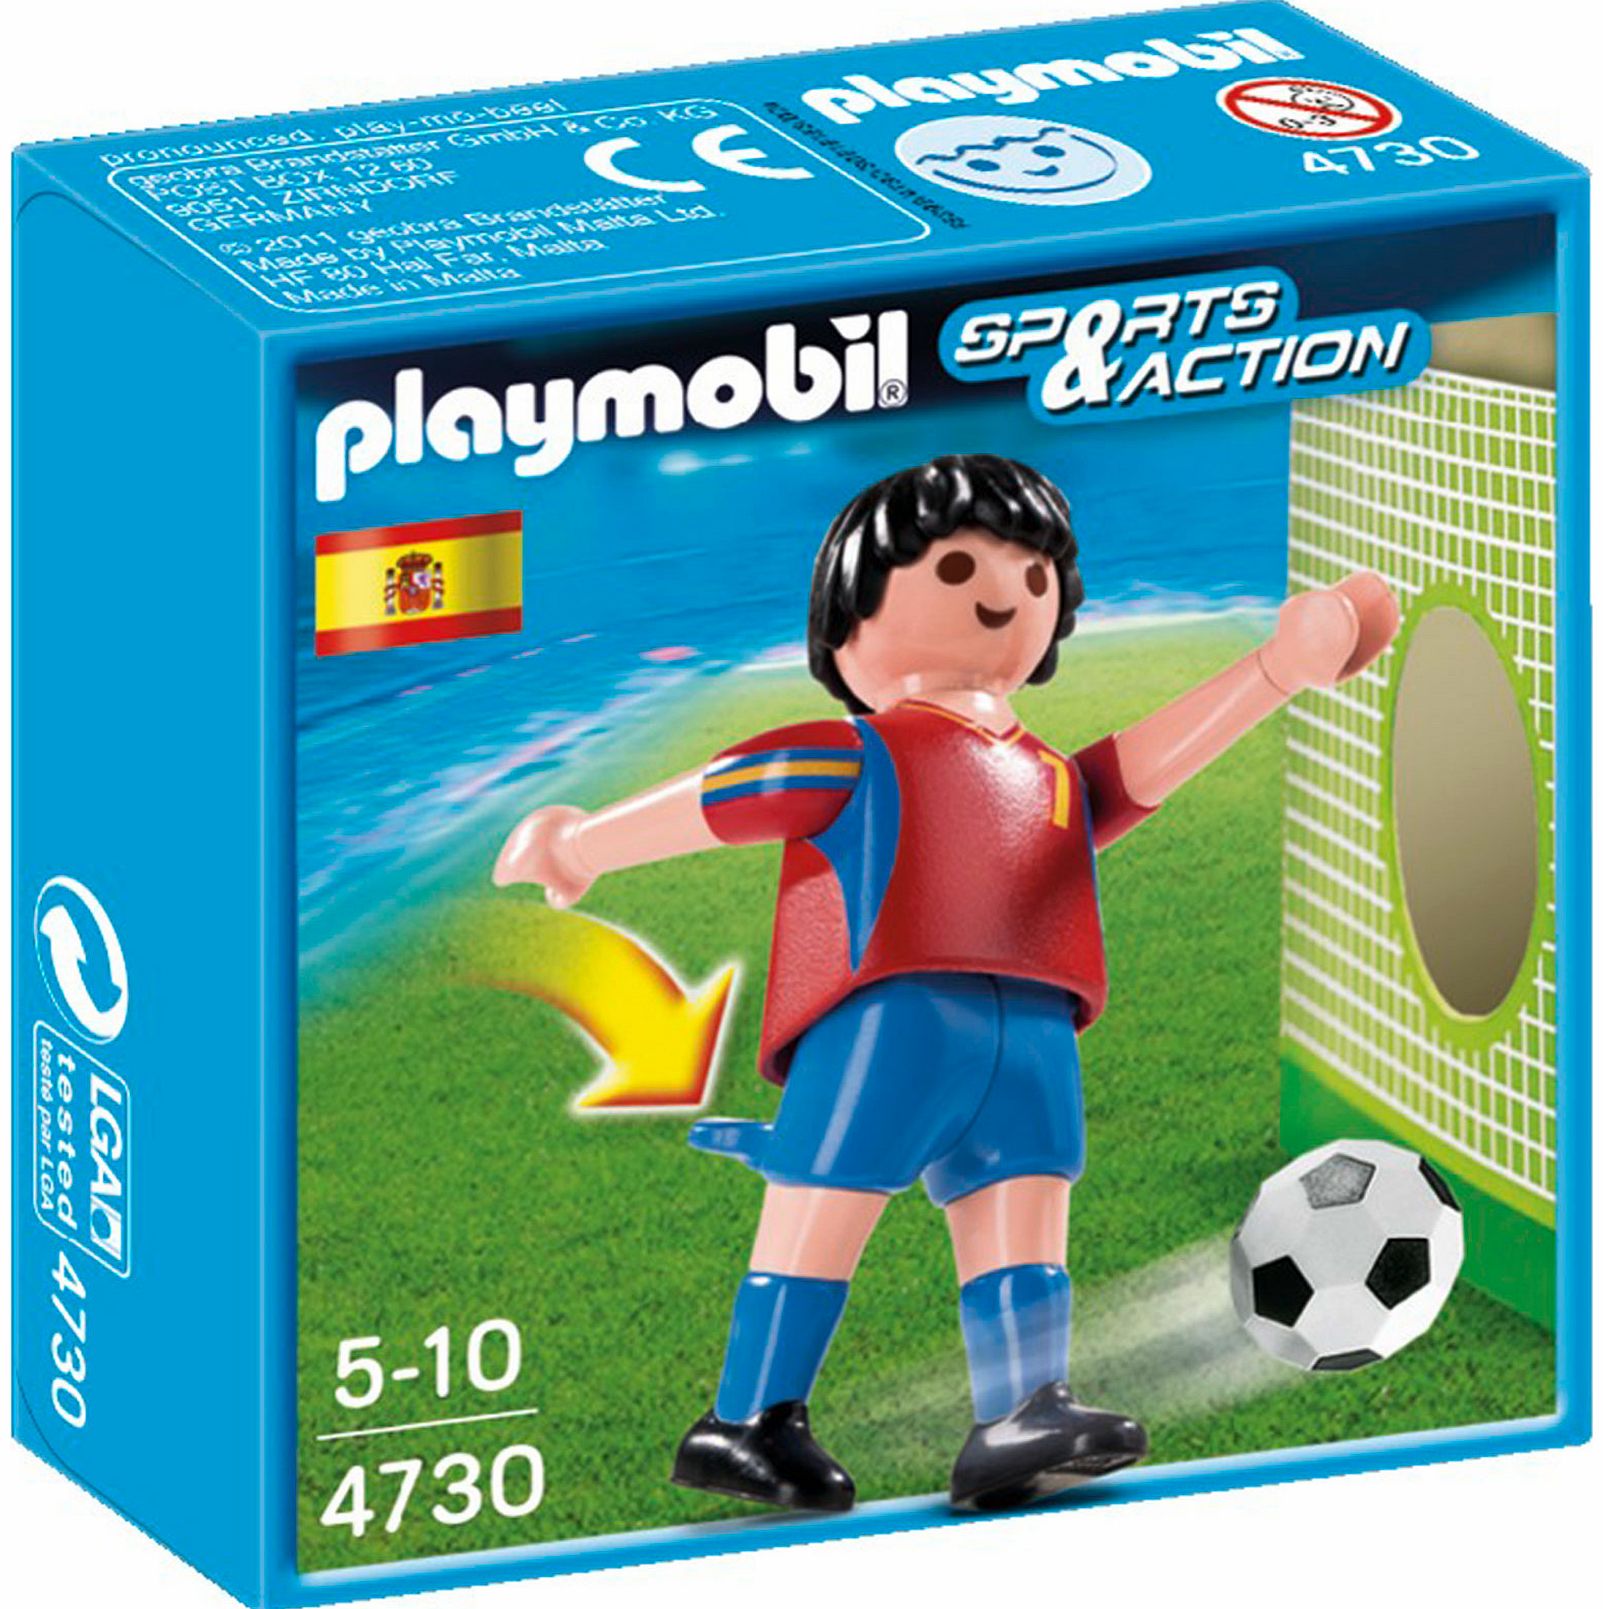 Soccer Player - Spain 4730